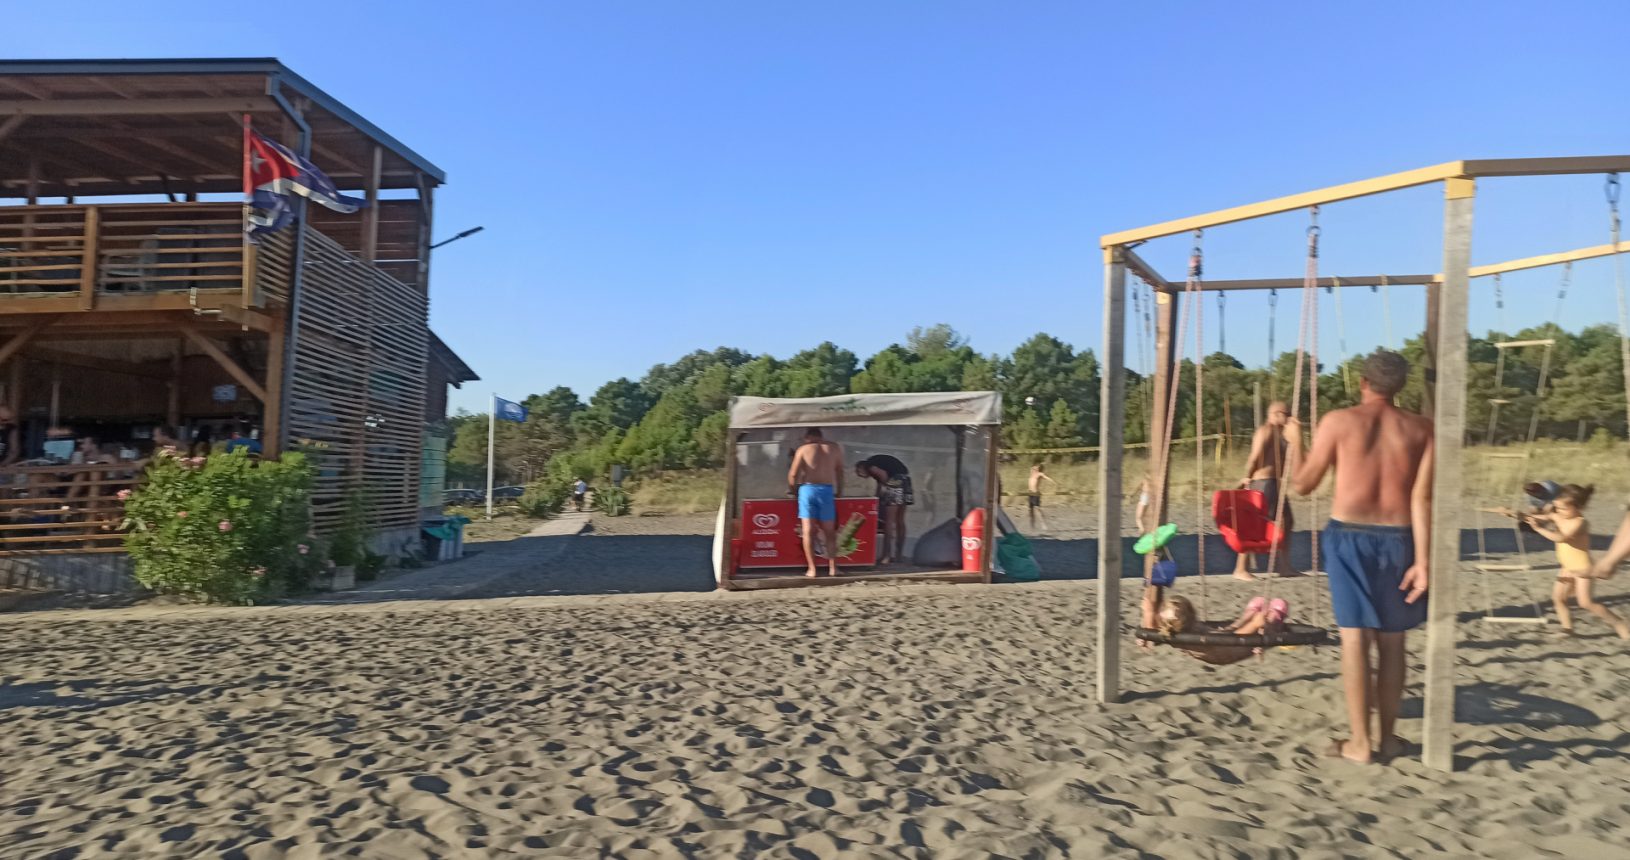 Mojito Beach bar and playground